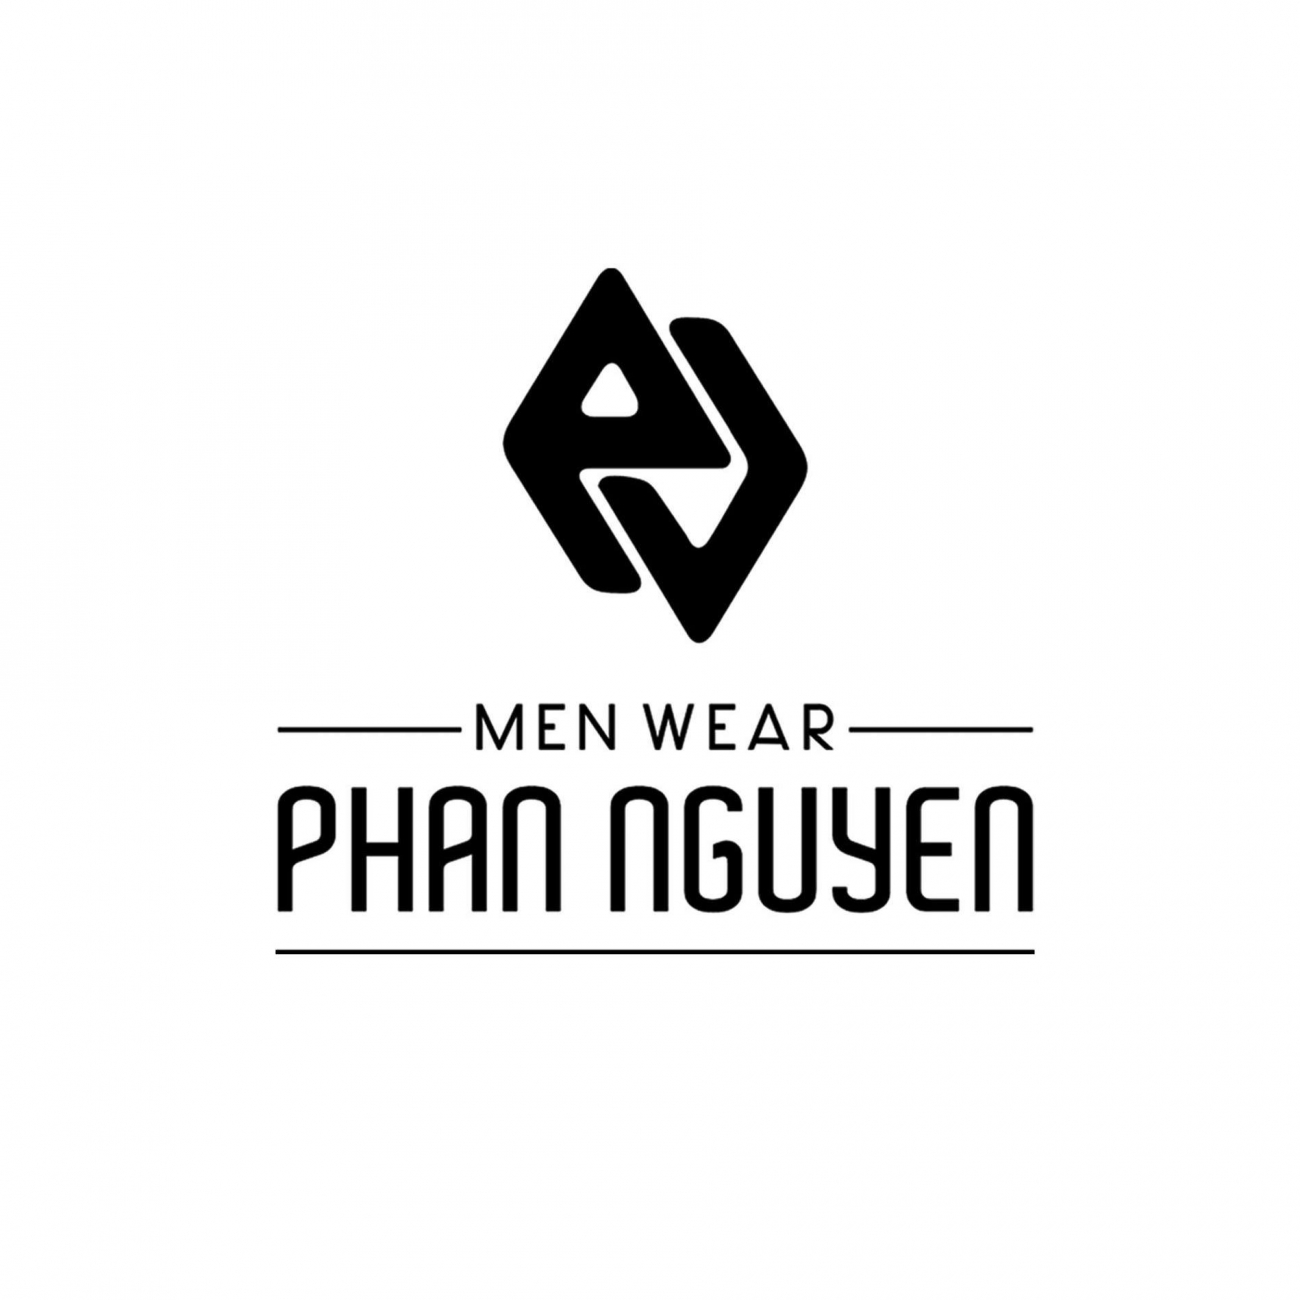 Cửa hàng thời trang nam Phan Nguyễn Quận 3